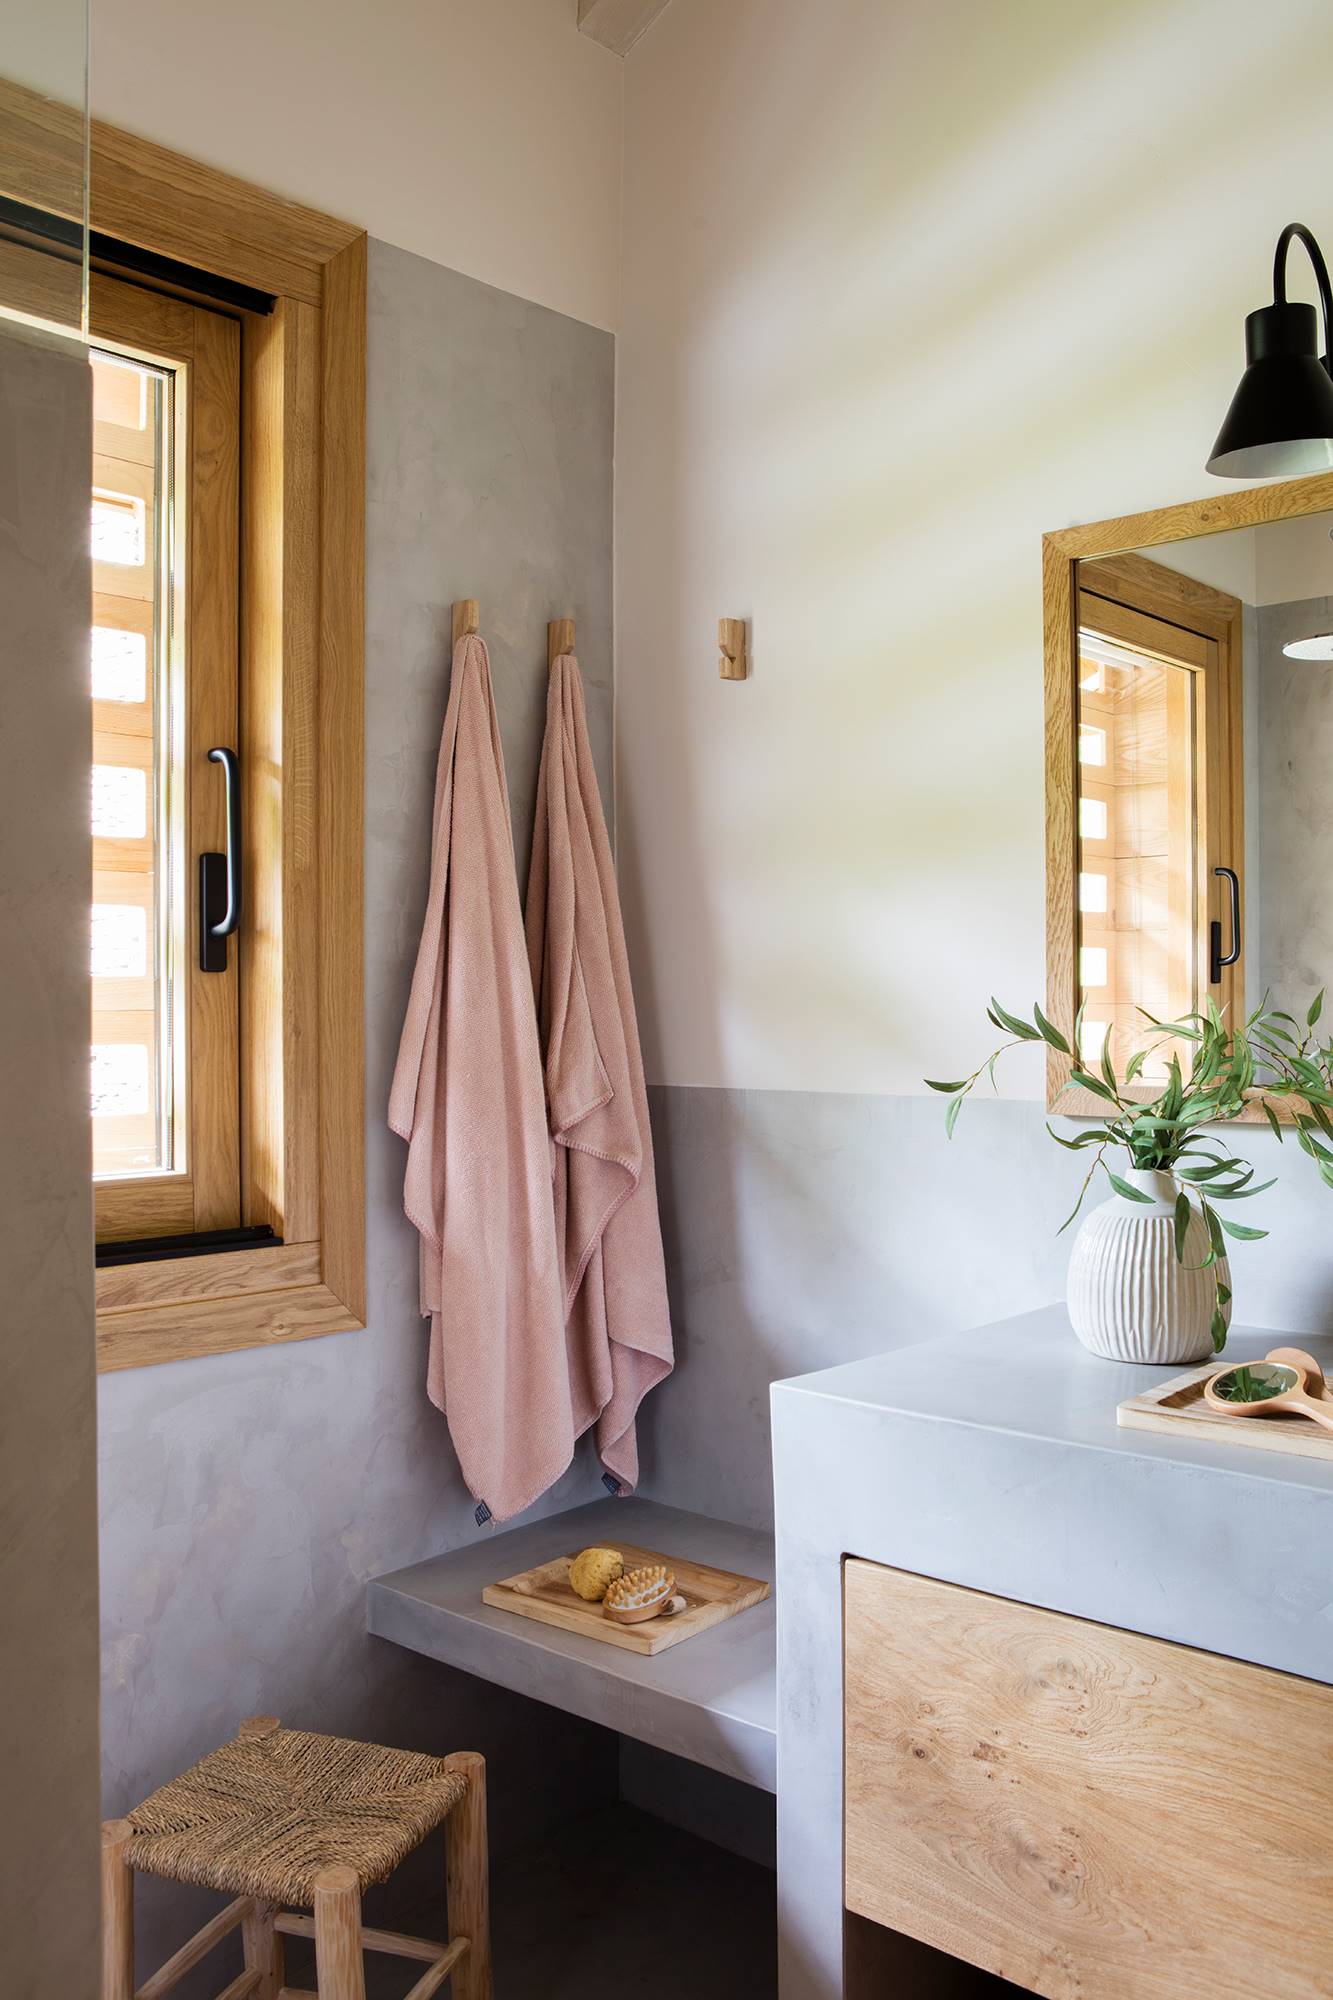 Baño organizado con perchas de pared para varias toallas. 